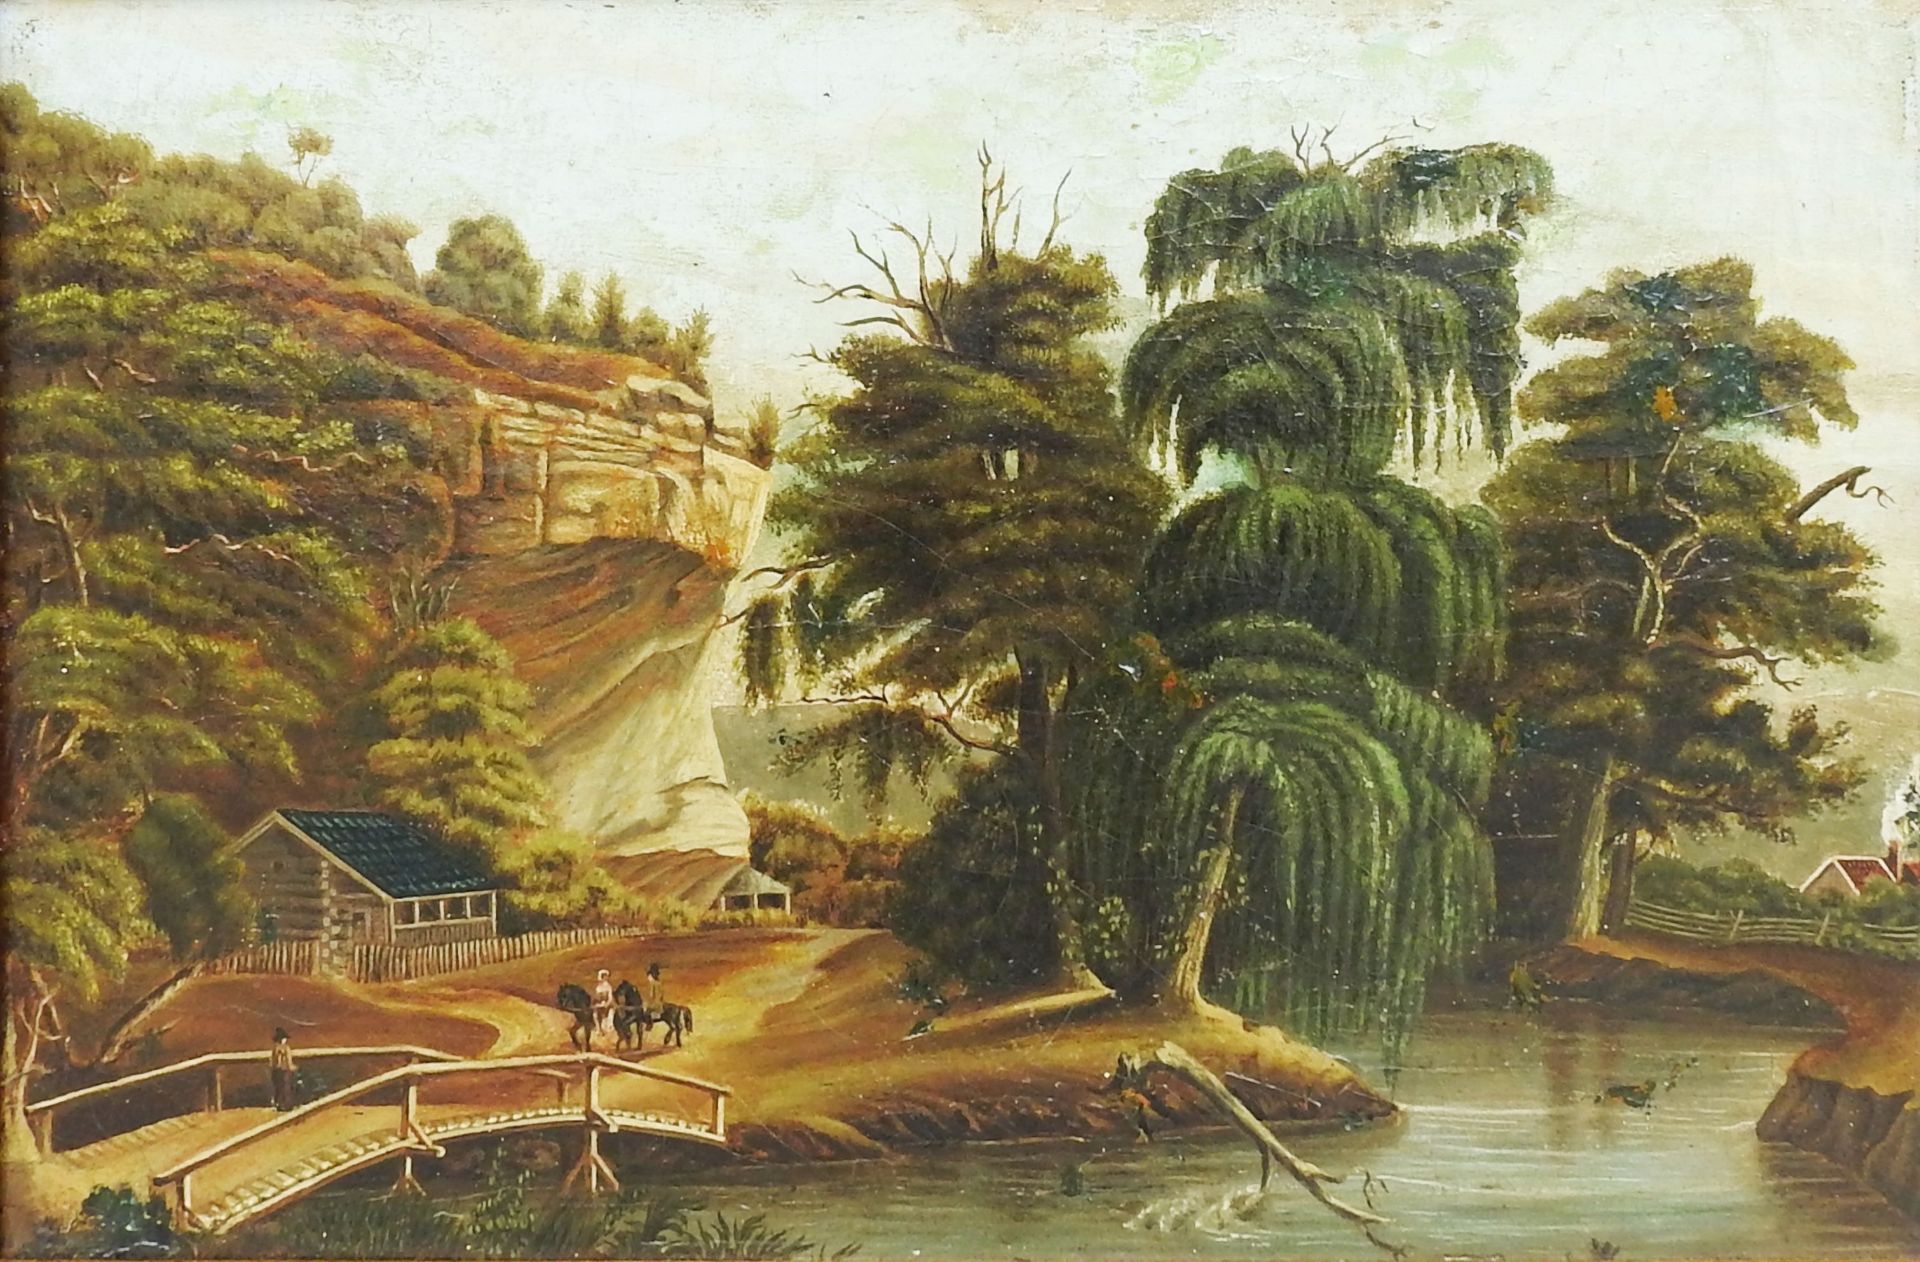 Öl/Leinwand auf Holz doubl. Das Gemälde zeigt den Blick auf das Ufer eines nach rechts ziehenden